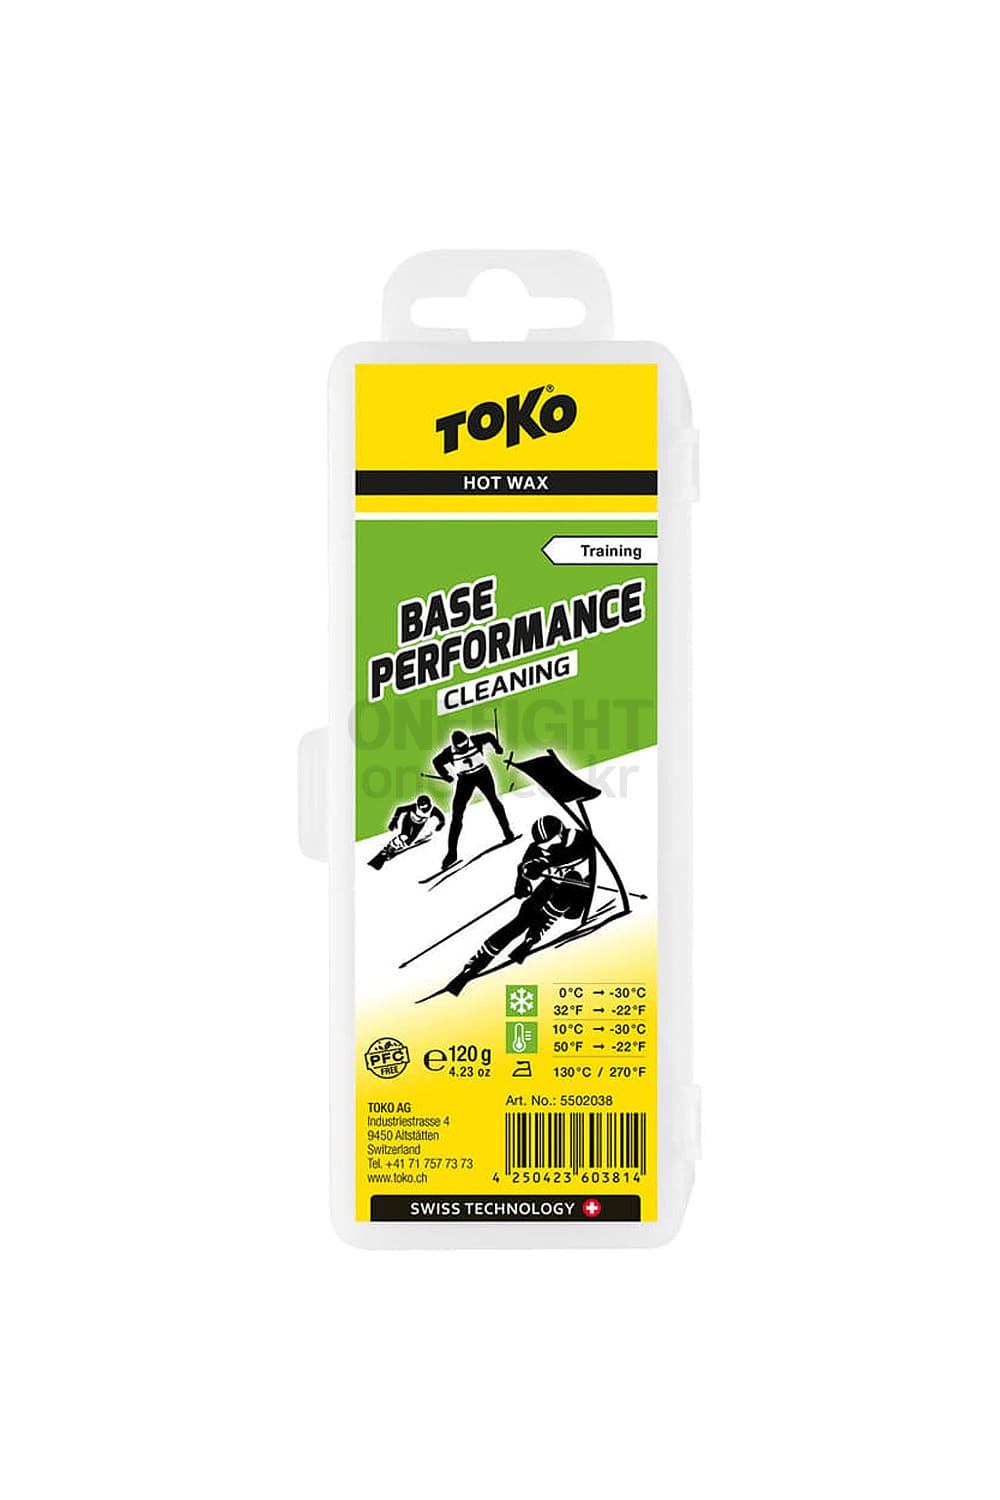 토코 베이스 퍼포먼스 클리닝왁스 120G TOKO_BASE PERFORMANCE CLEANING 120G_5502038_베이스 청소용 왁스_DHTK02500